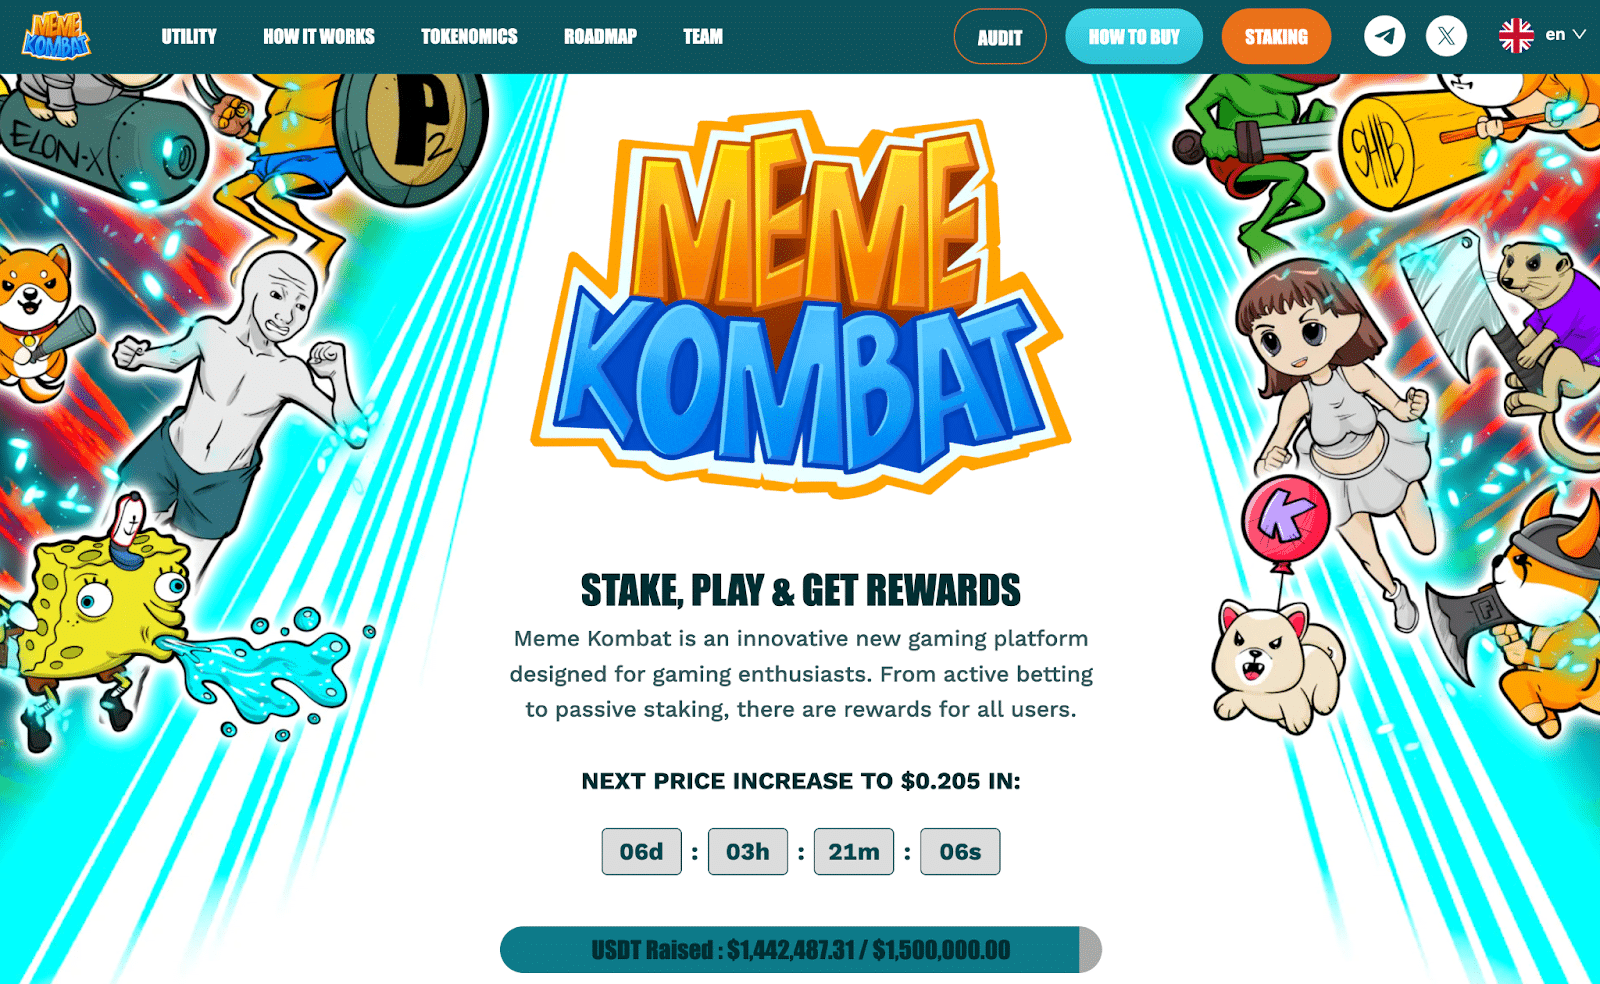 亚星体育登陆网址Pepepe币价格上涨25%Meme Kombat在独特的游戏平台上筹集了近150万美元　也许会有100倍的增加